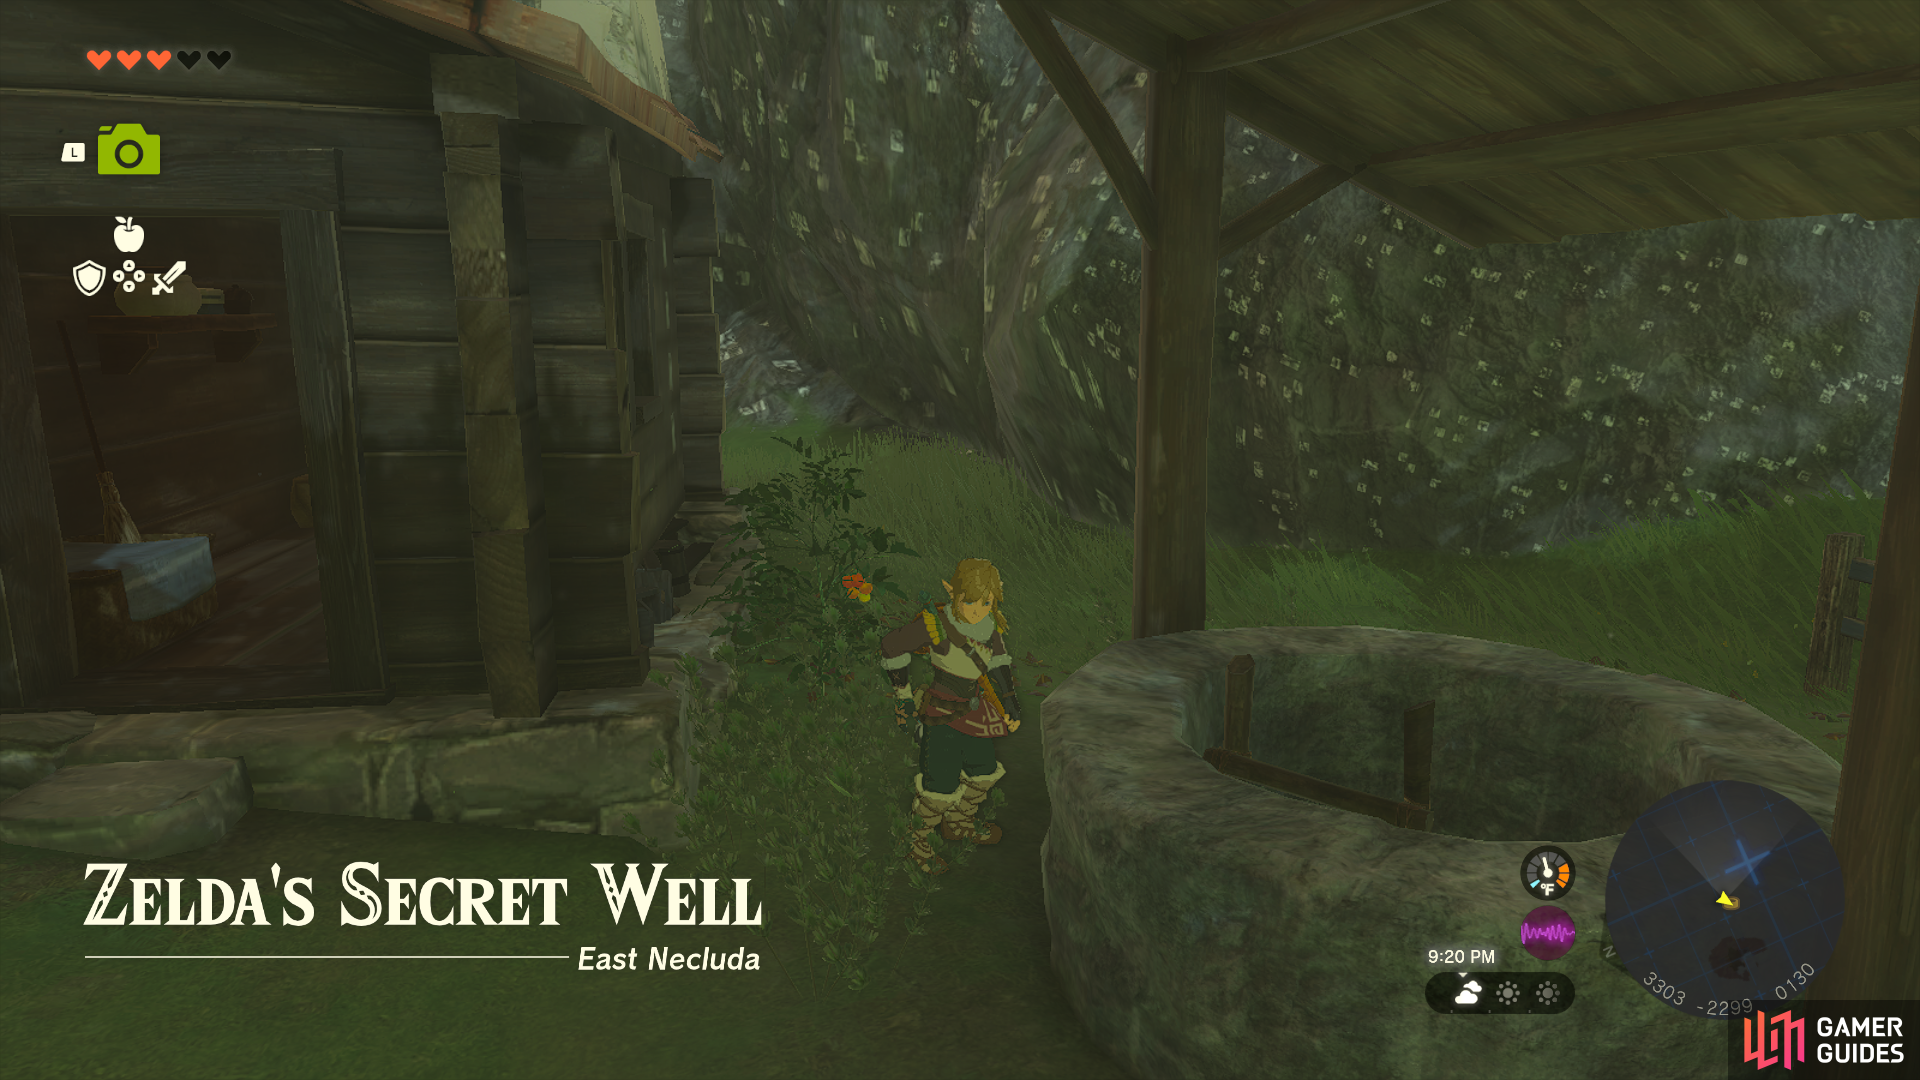 Finding Zelda's secret well.